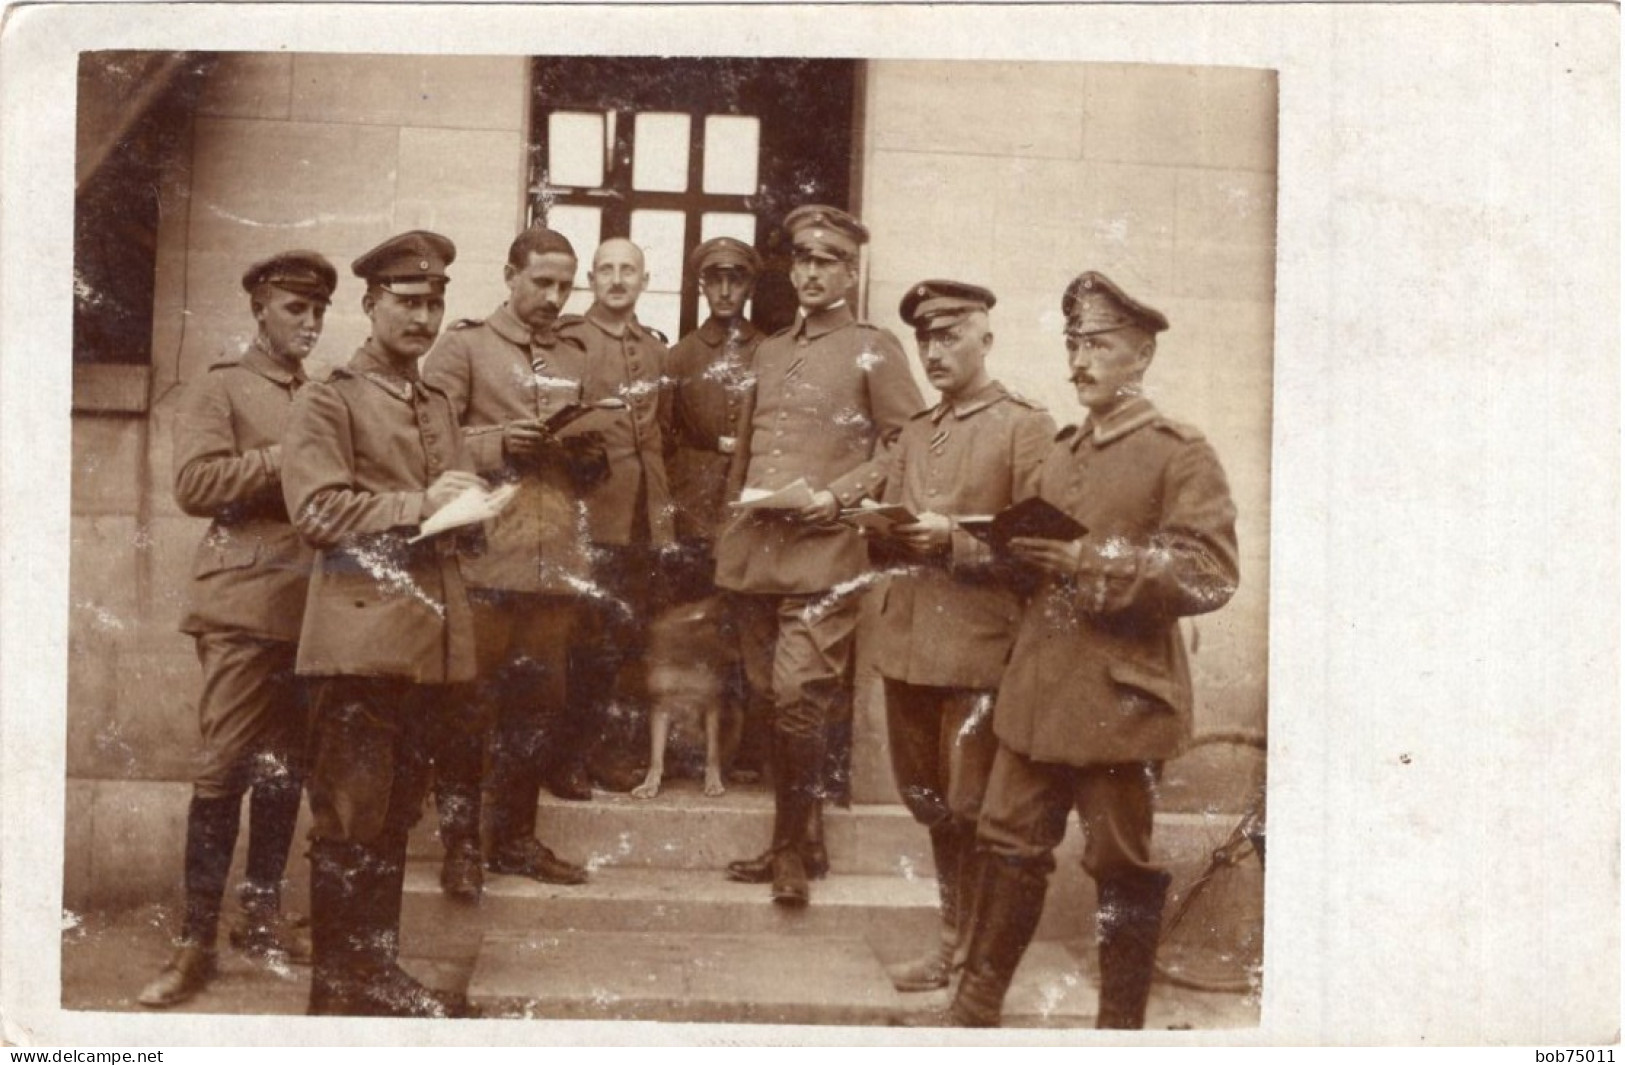 Carte Photo D'officiers Allemand Devant L'état Major A L'arrière Du Front En 14-18 - 1914-18